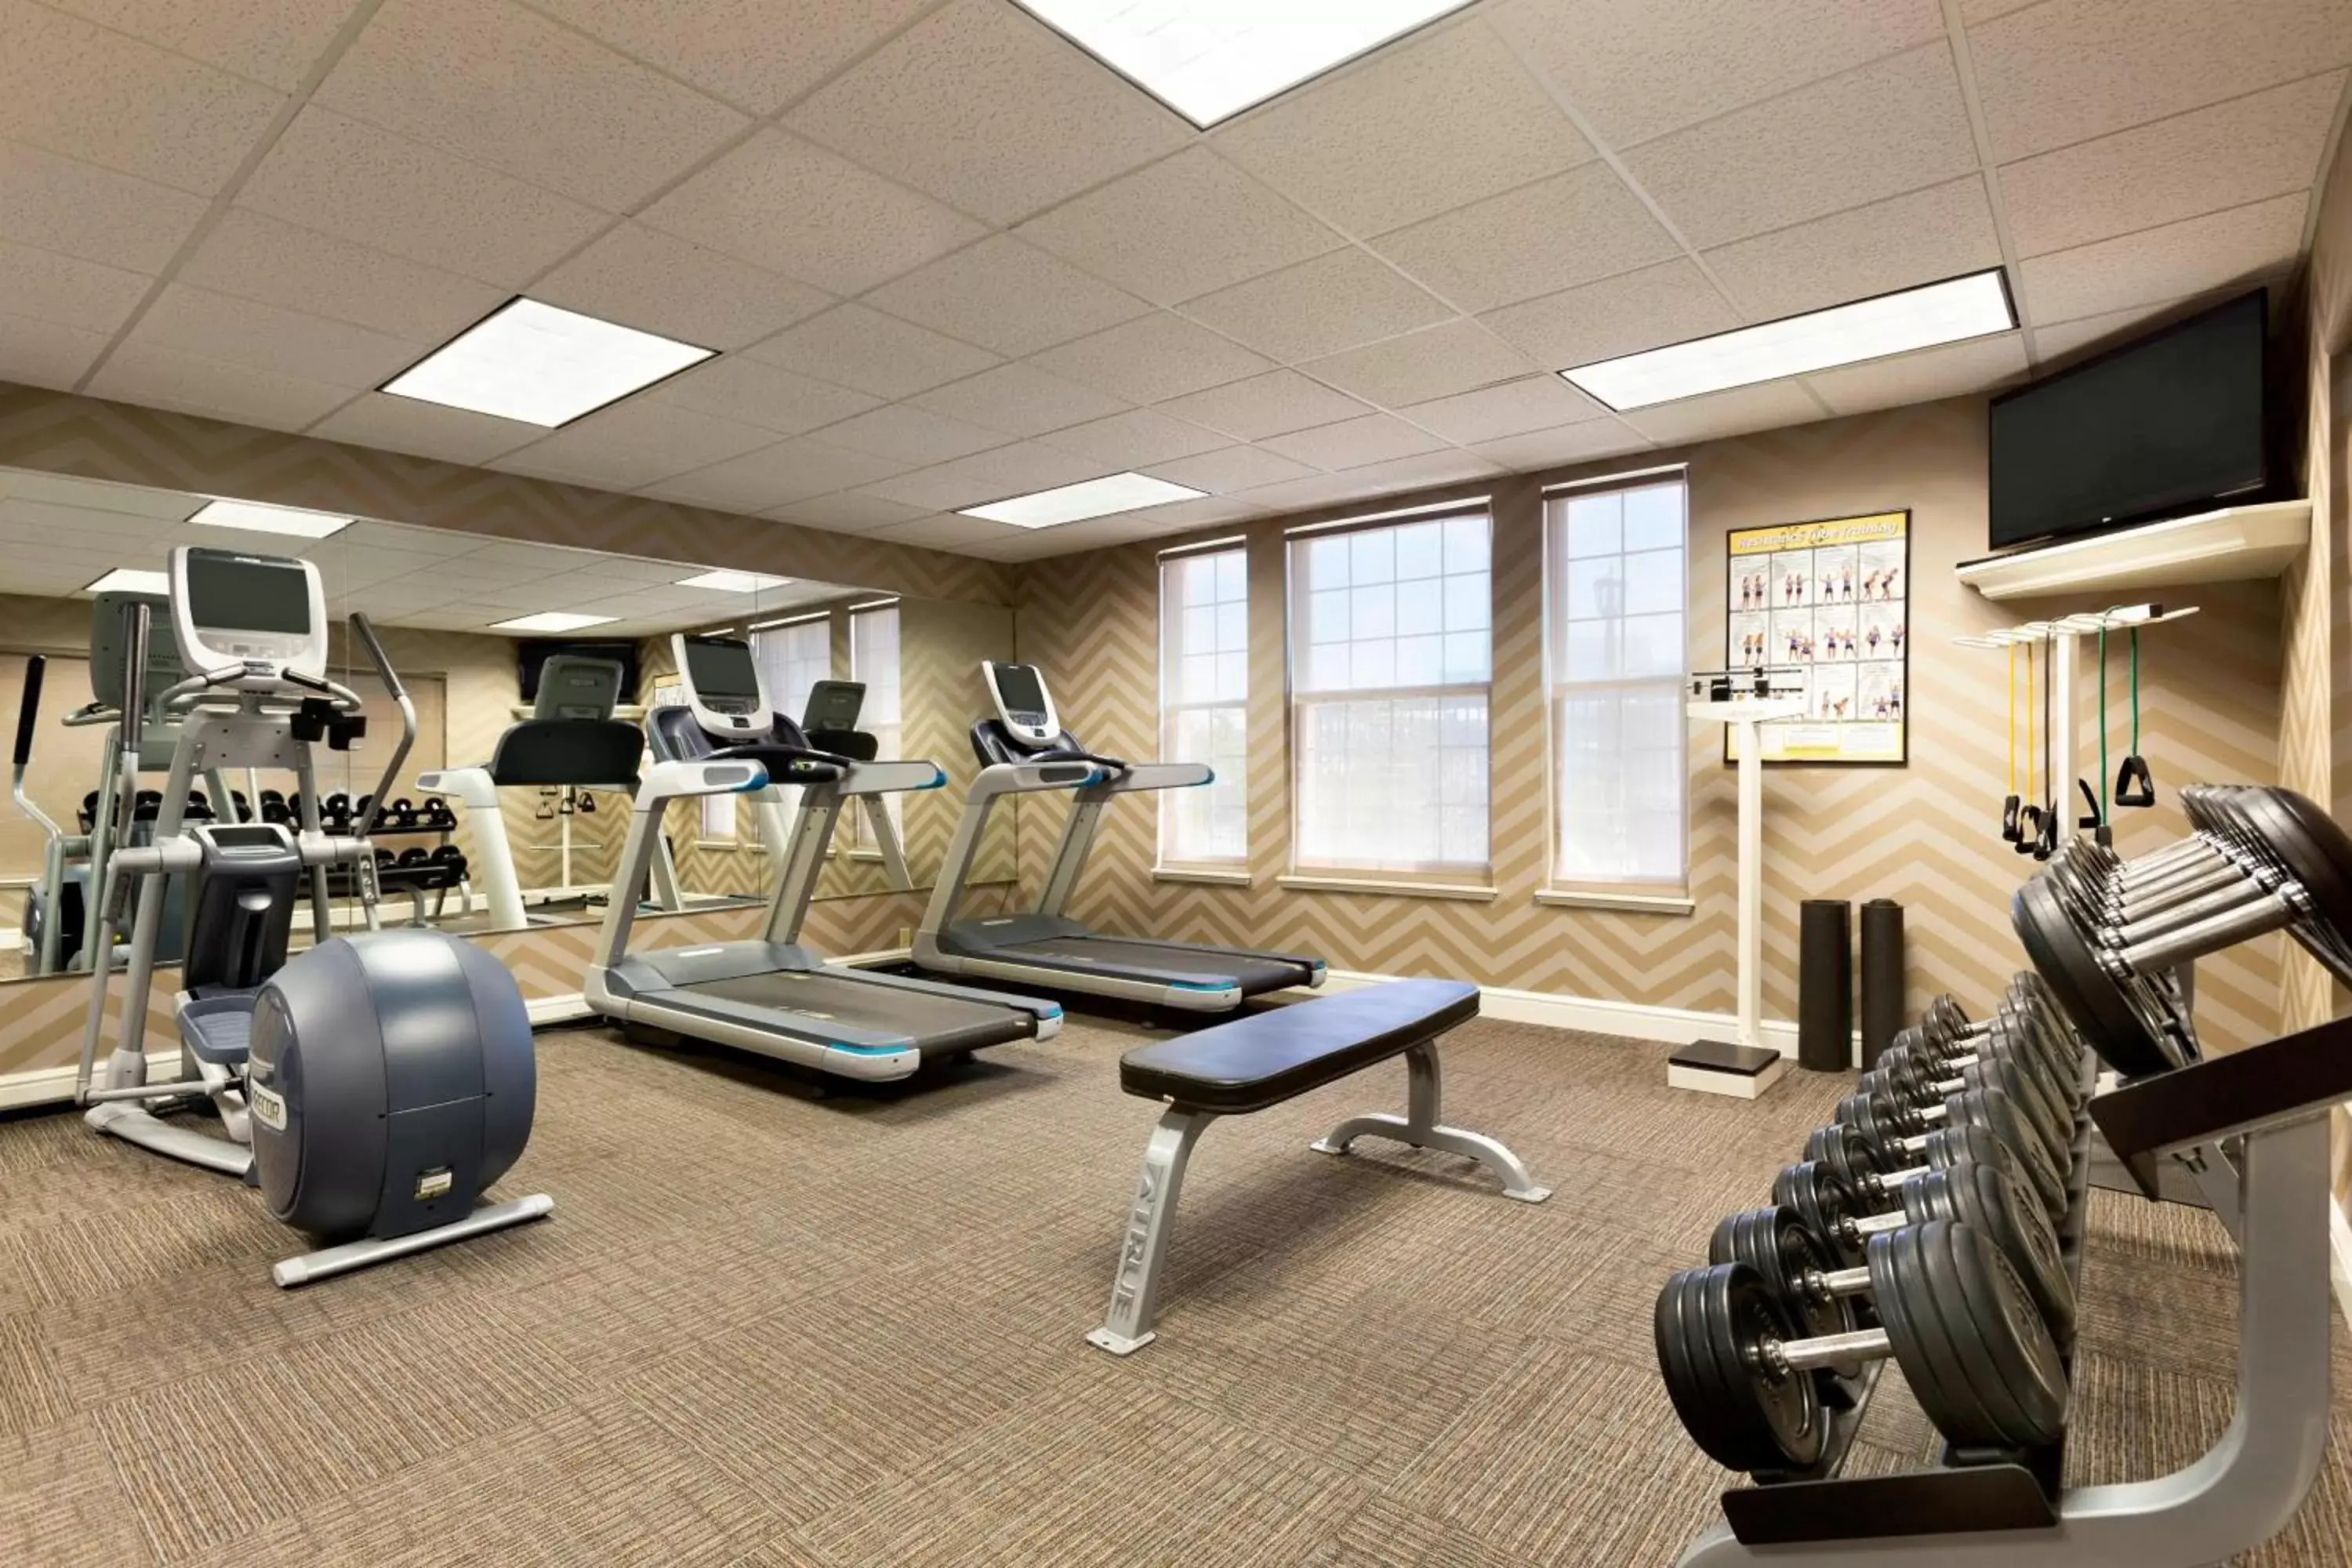 Fitness centre/facilities, Fitness Center/Facilities in Residence Inn Joplin